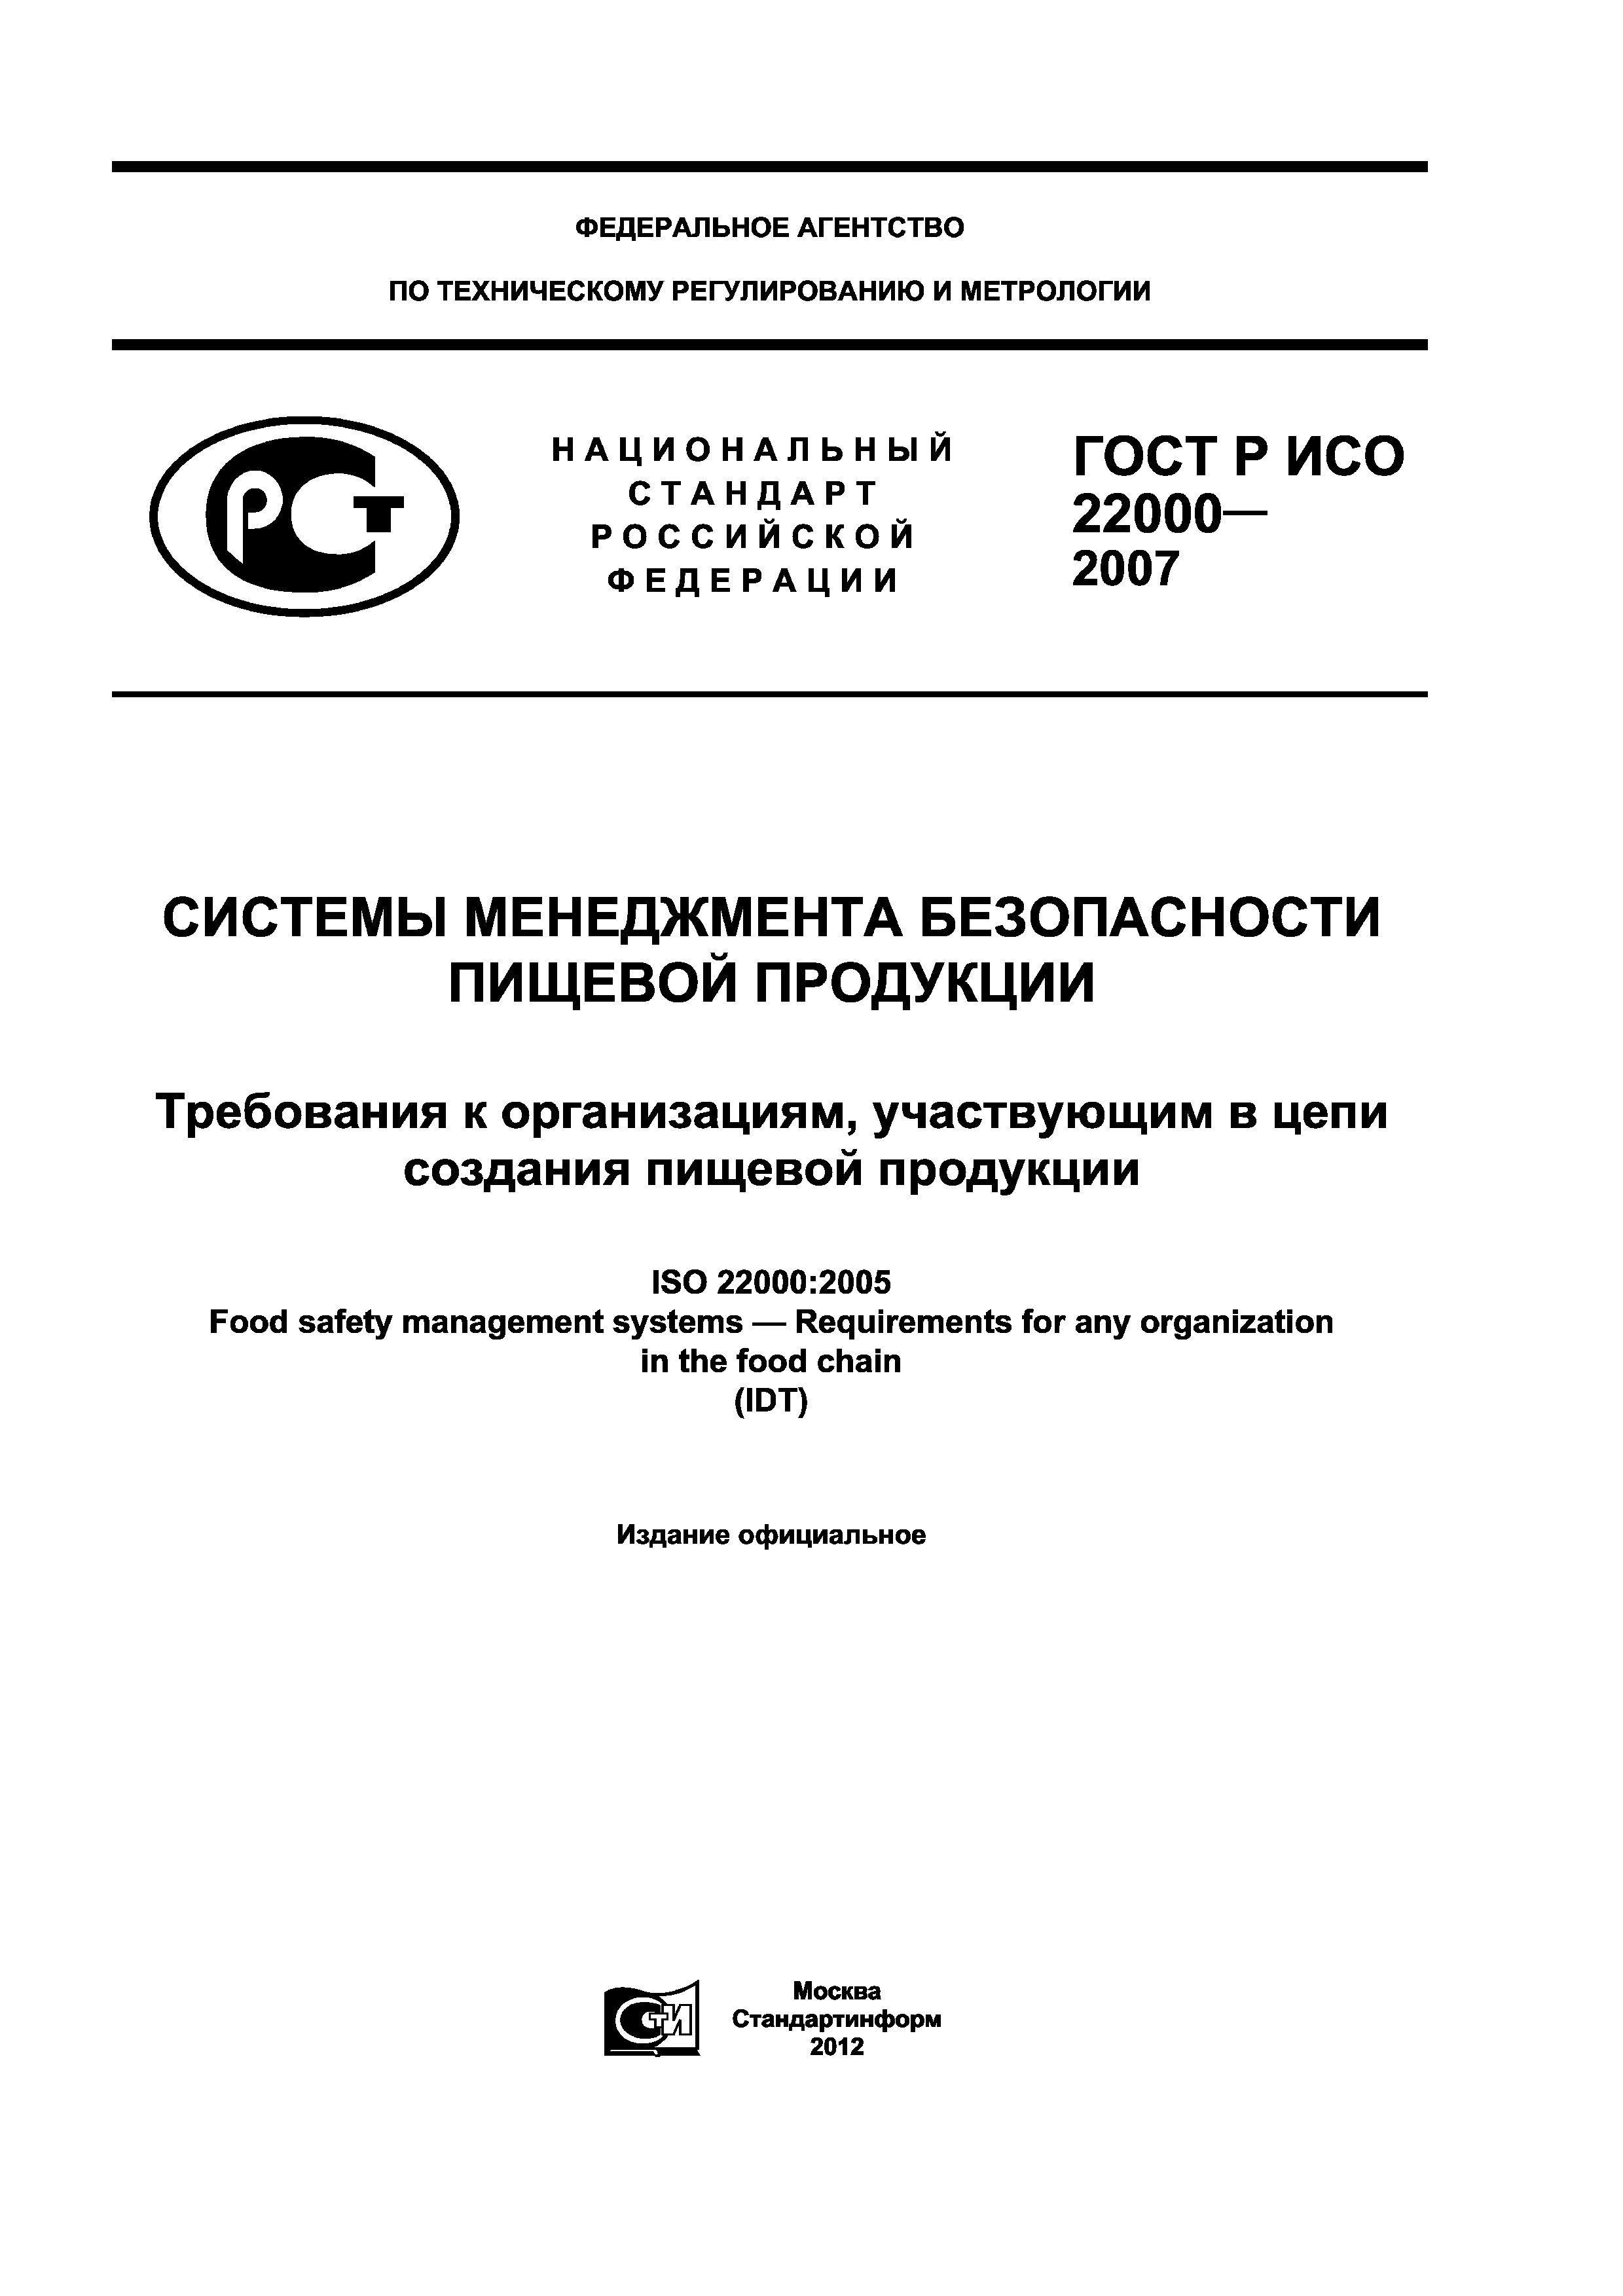 ГОСТ Р ИСО 22000-2007